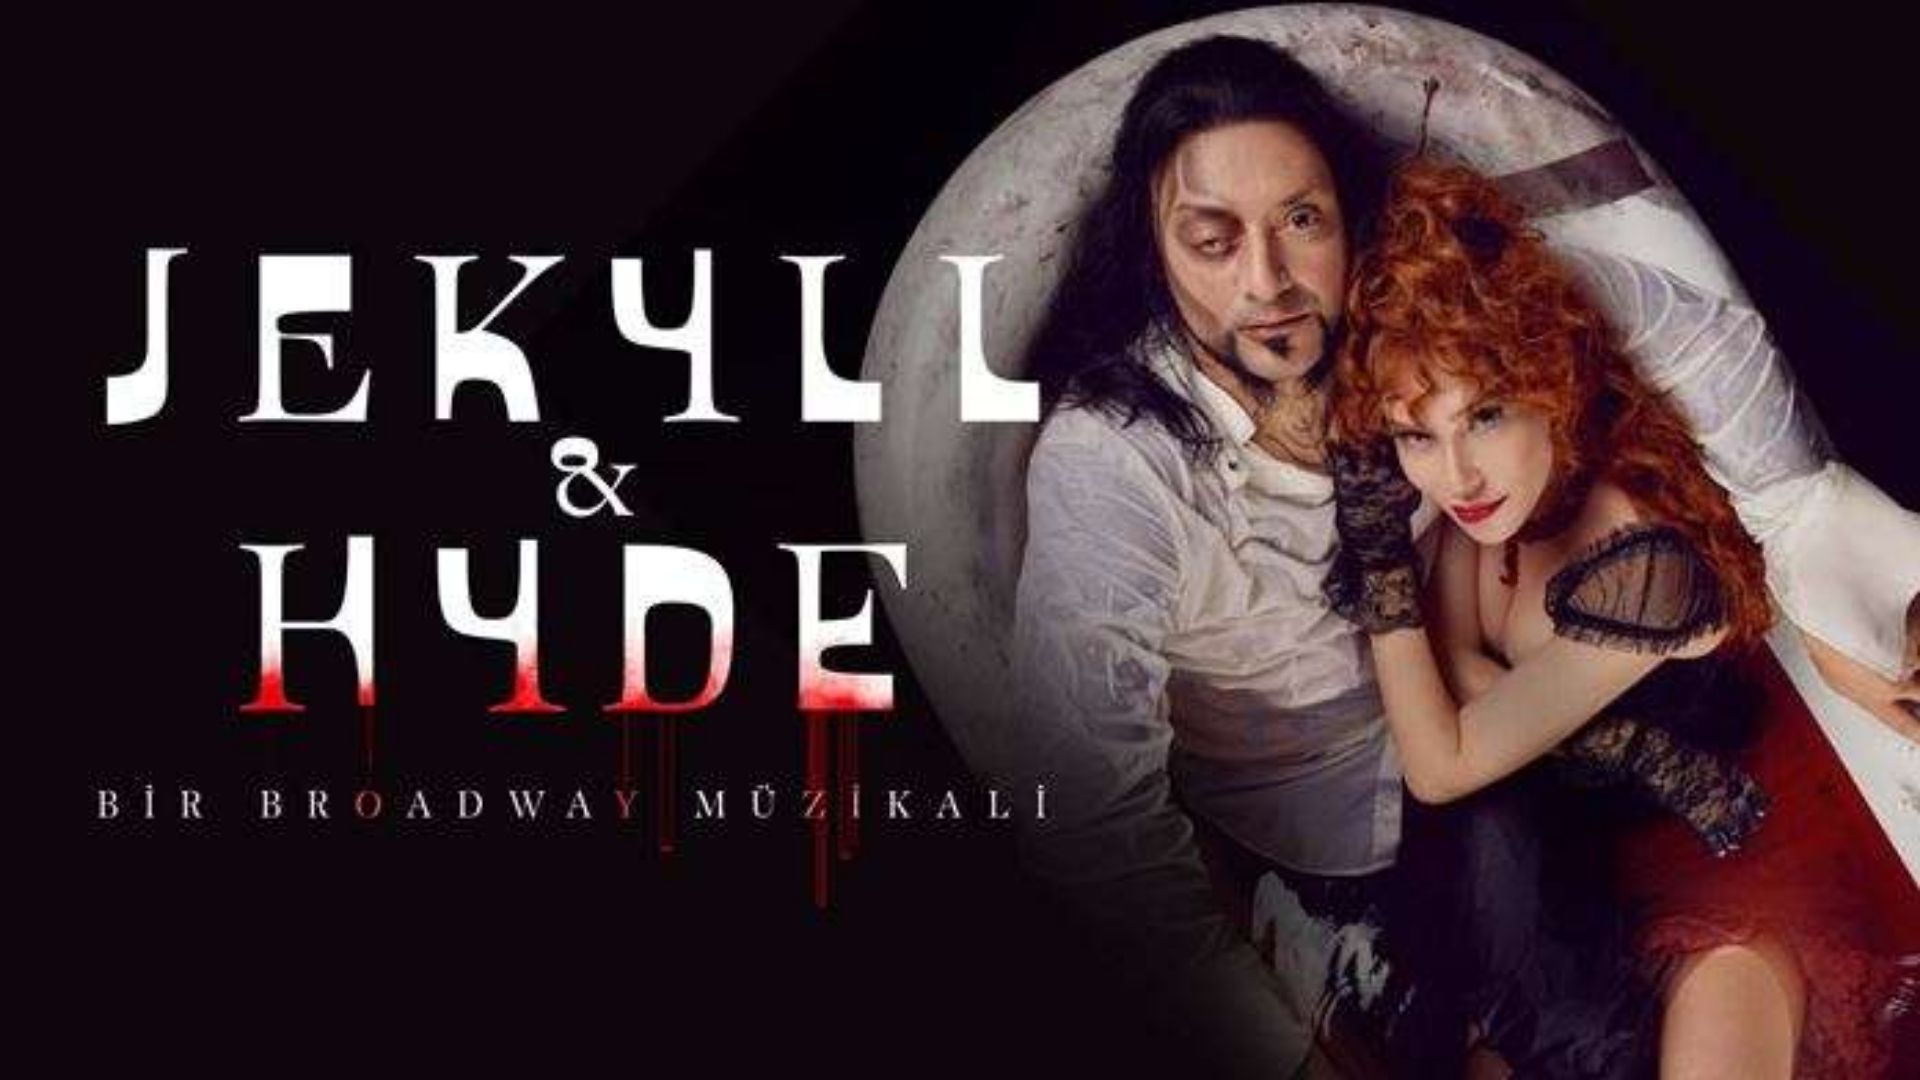 Jekyll & Hyde müzikali haftanın tiyatro oyunları